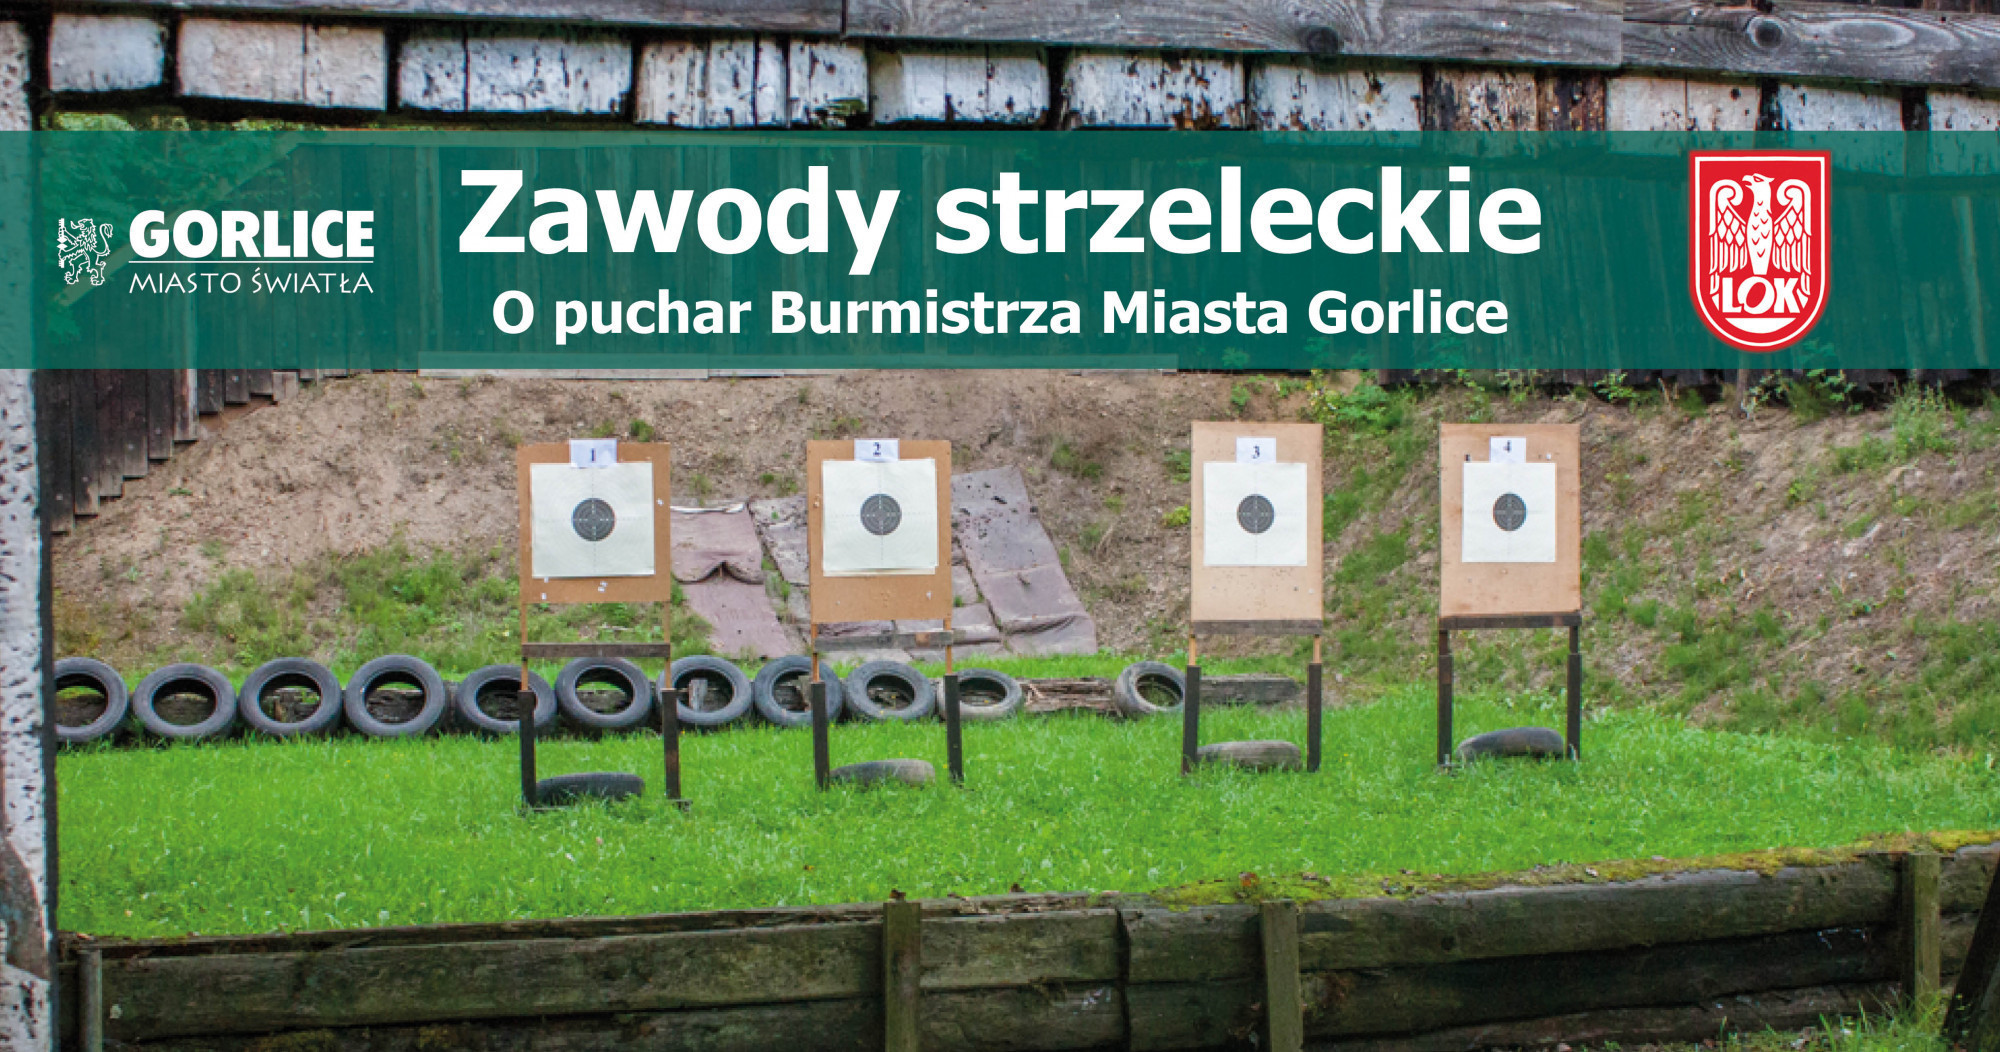 Zawody Strzeleckie z okazji Święta Wojska Polskiego